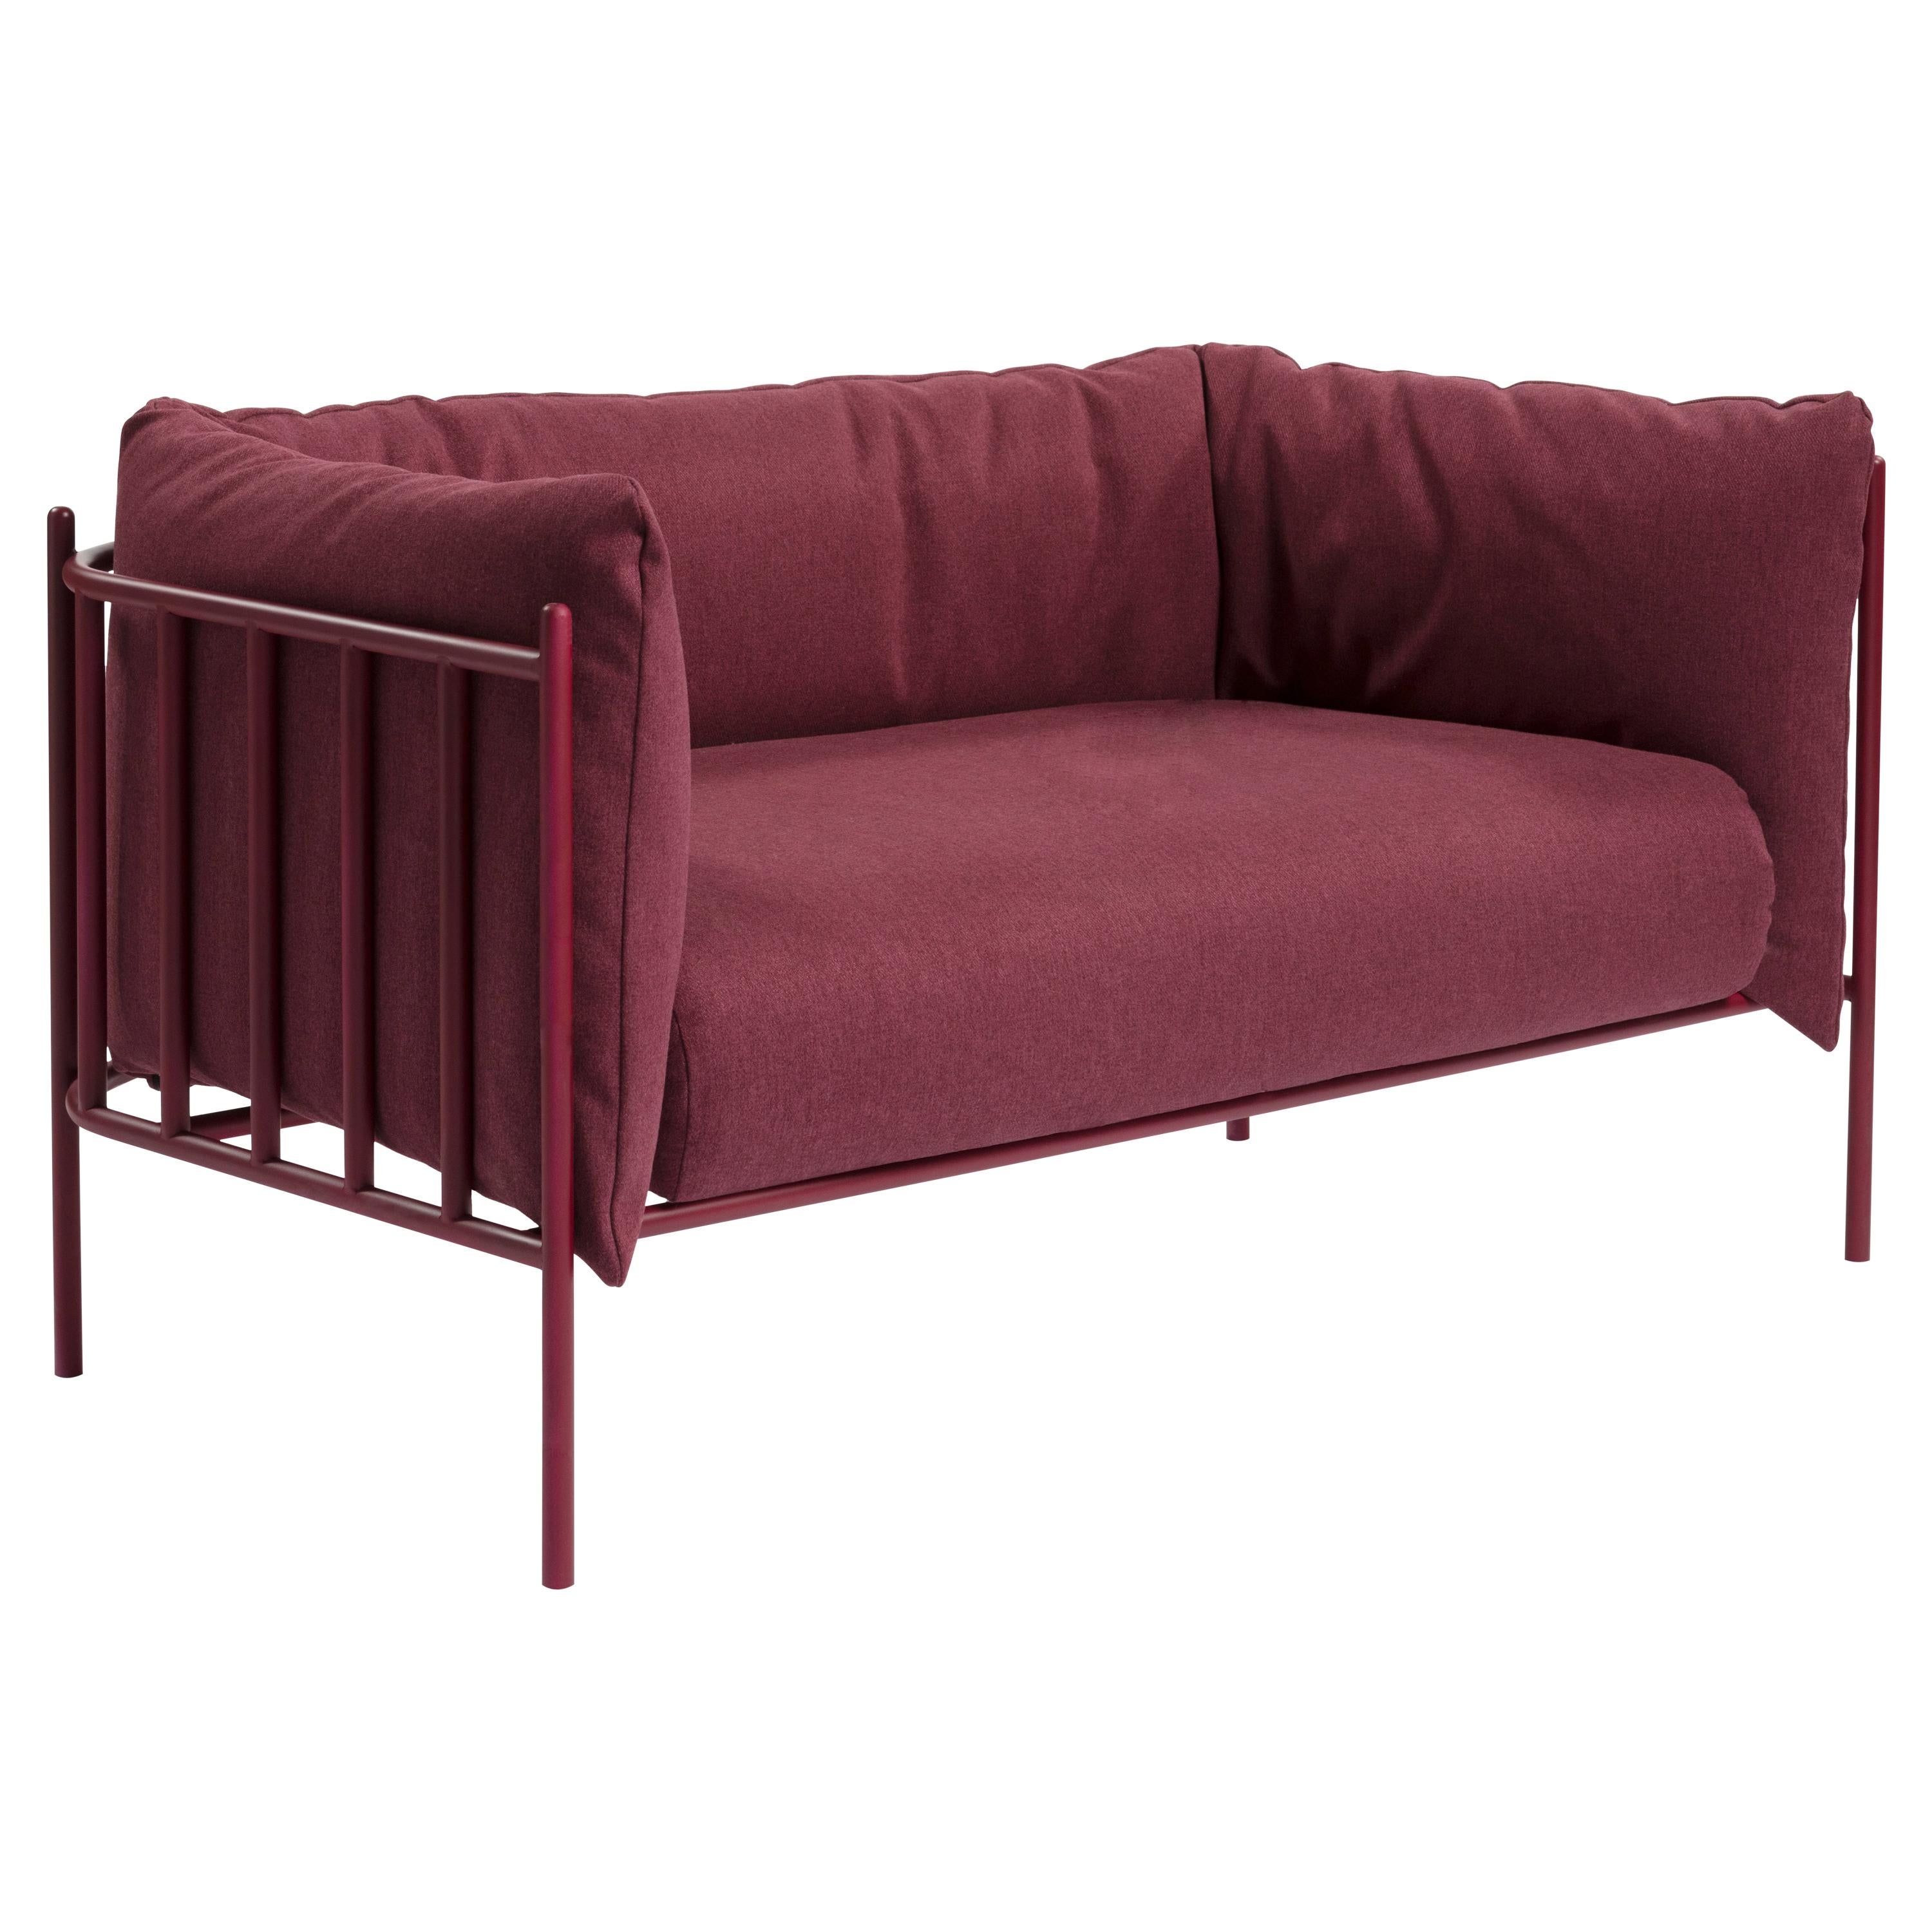 Sofa Loggia Upholstered in Velvet by Debonademeo for Medulum For Sale